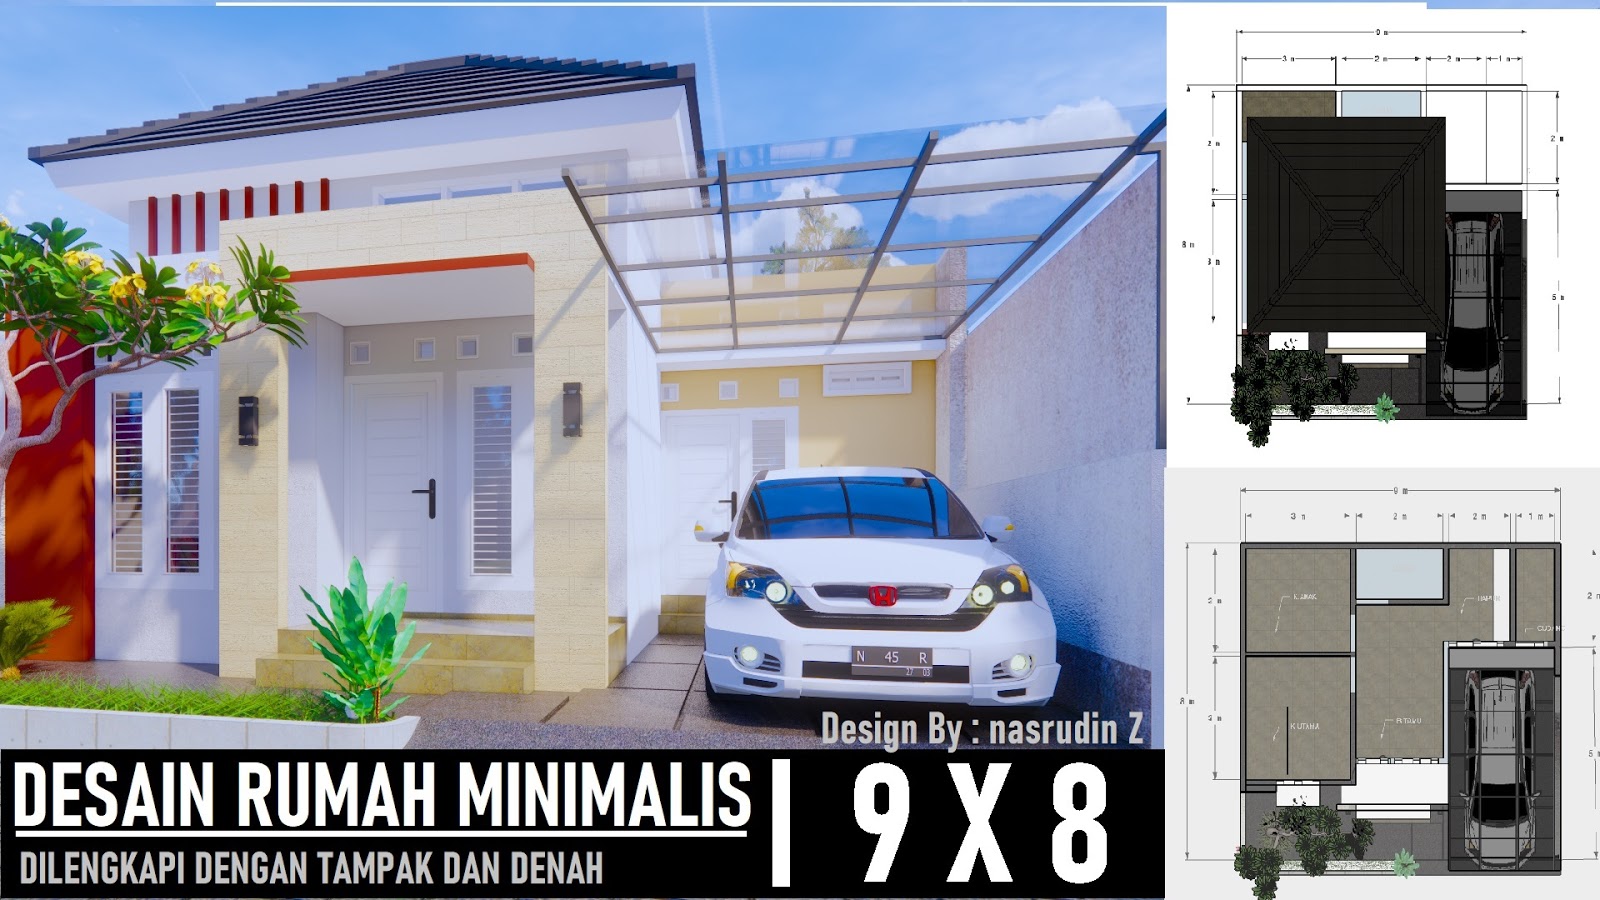 Desain Rumah Minimalis 8x9 Dilengkapi Denah Dan Tampak DESAIN RUMAH MINIMALIS